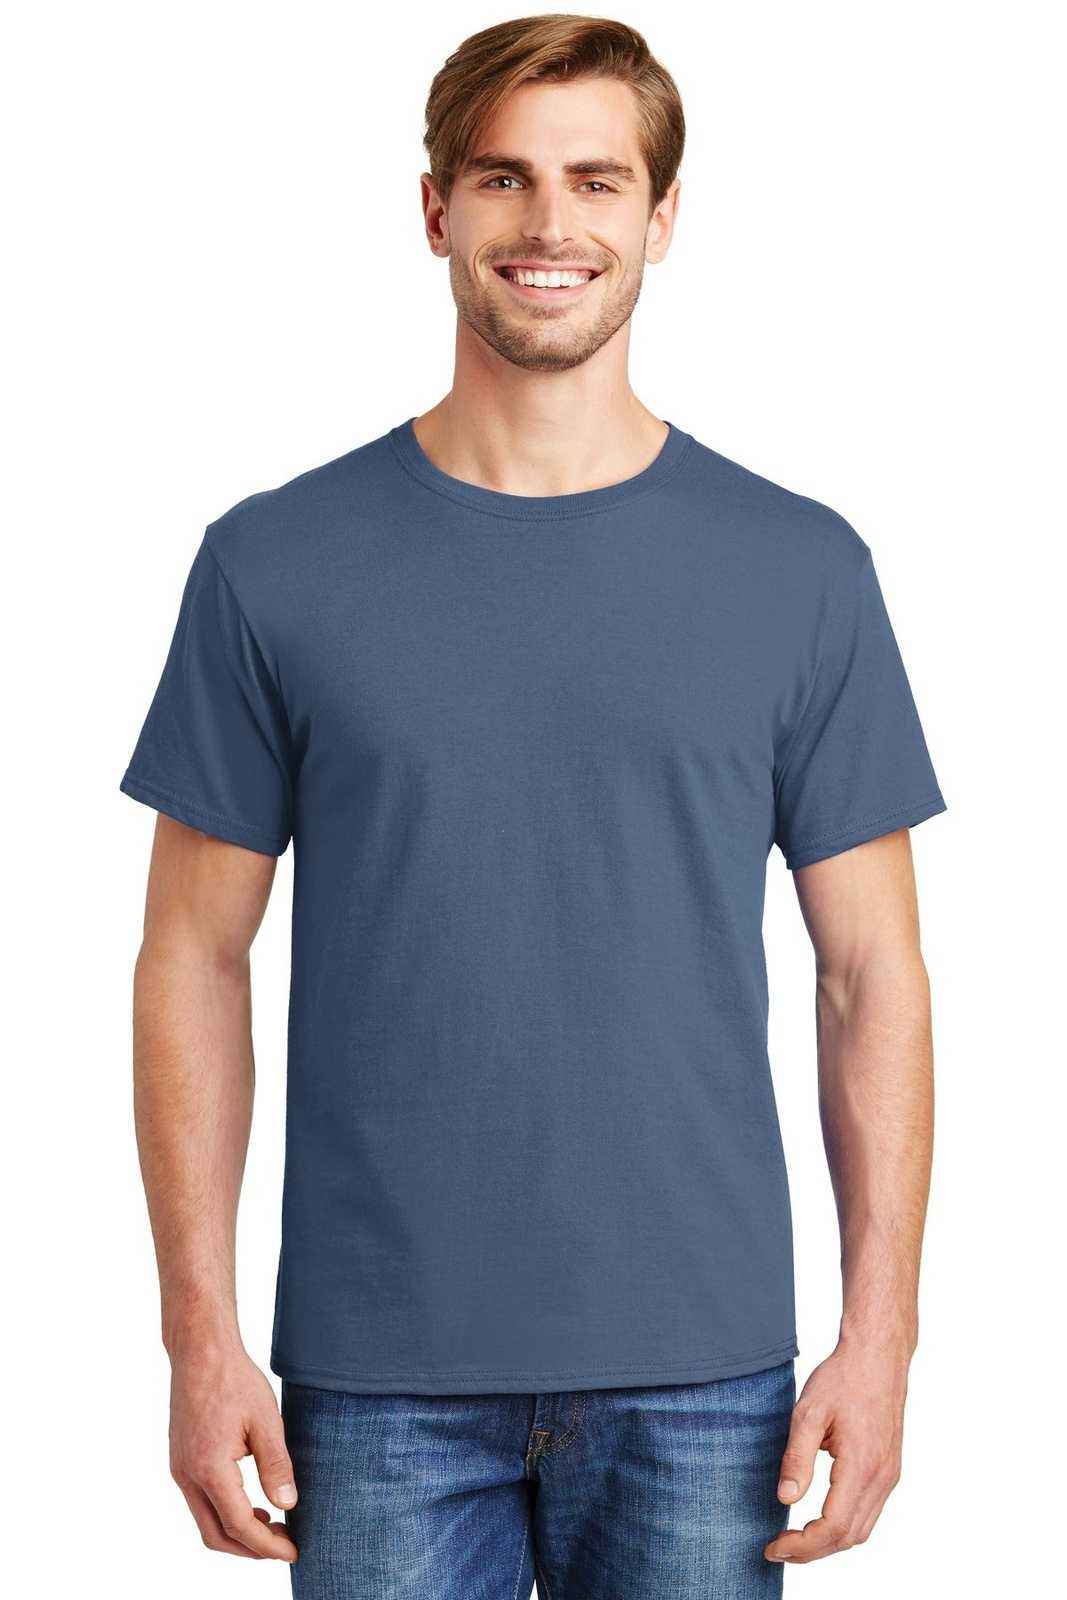 Hanes 5280 Comfortsoft 100% Cotton T-Shirt - Denim Blue - HIT a Double